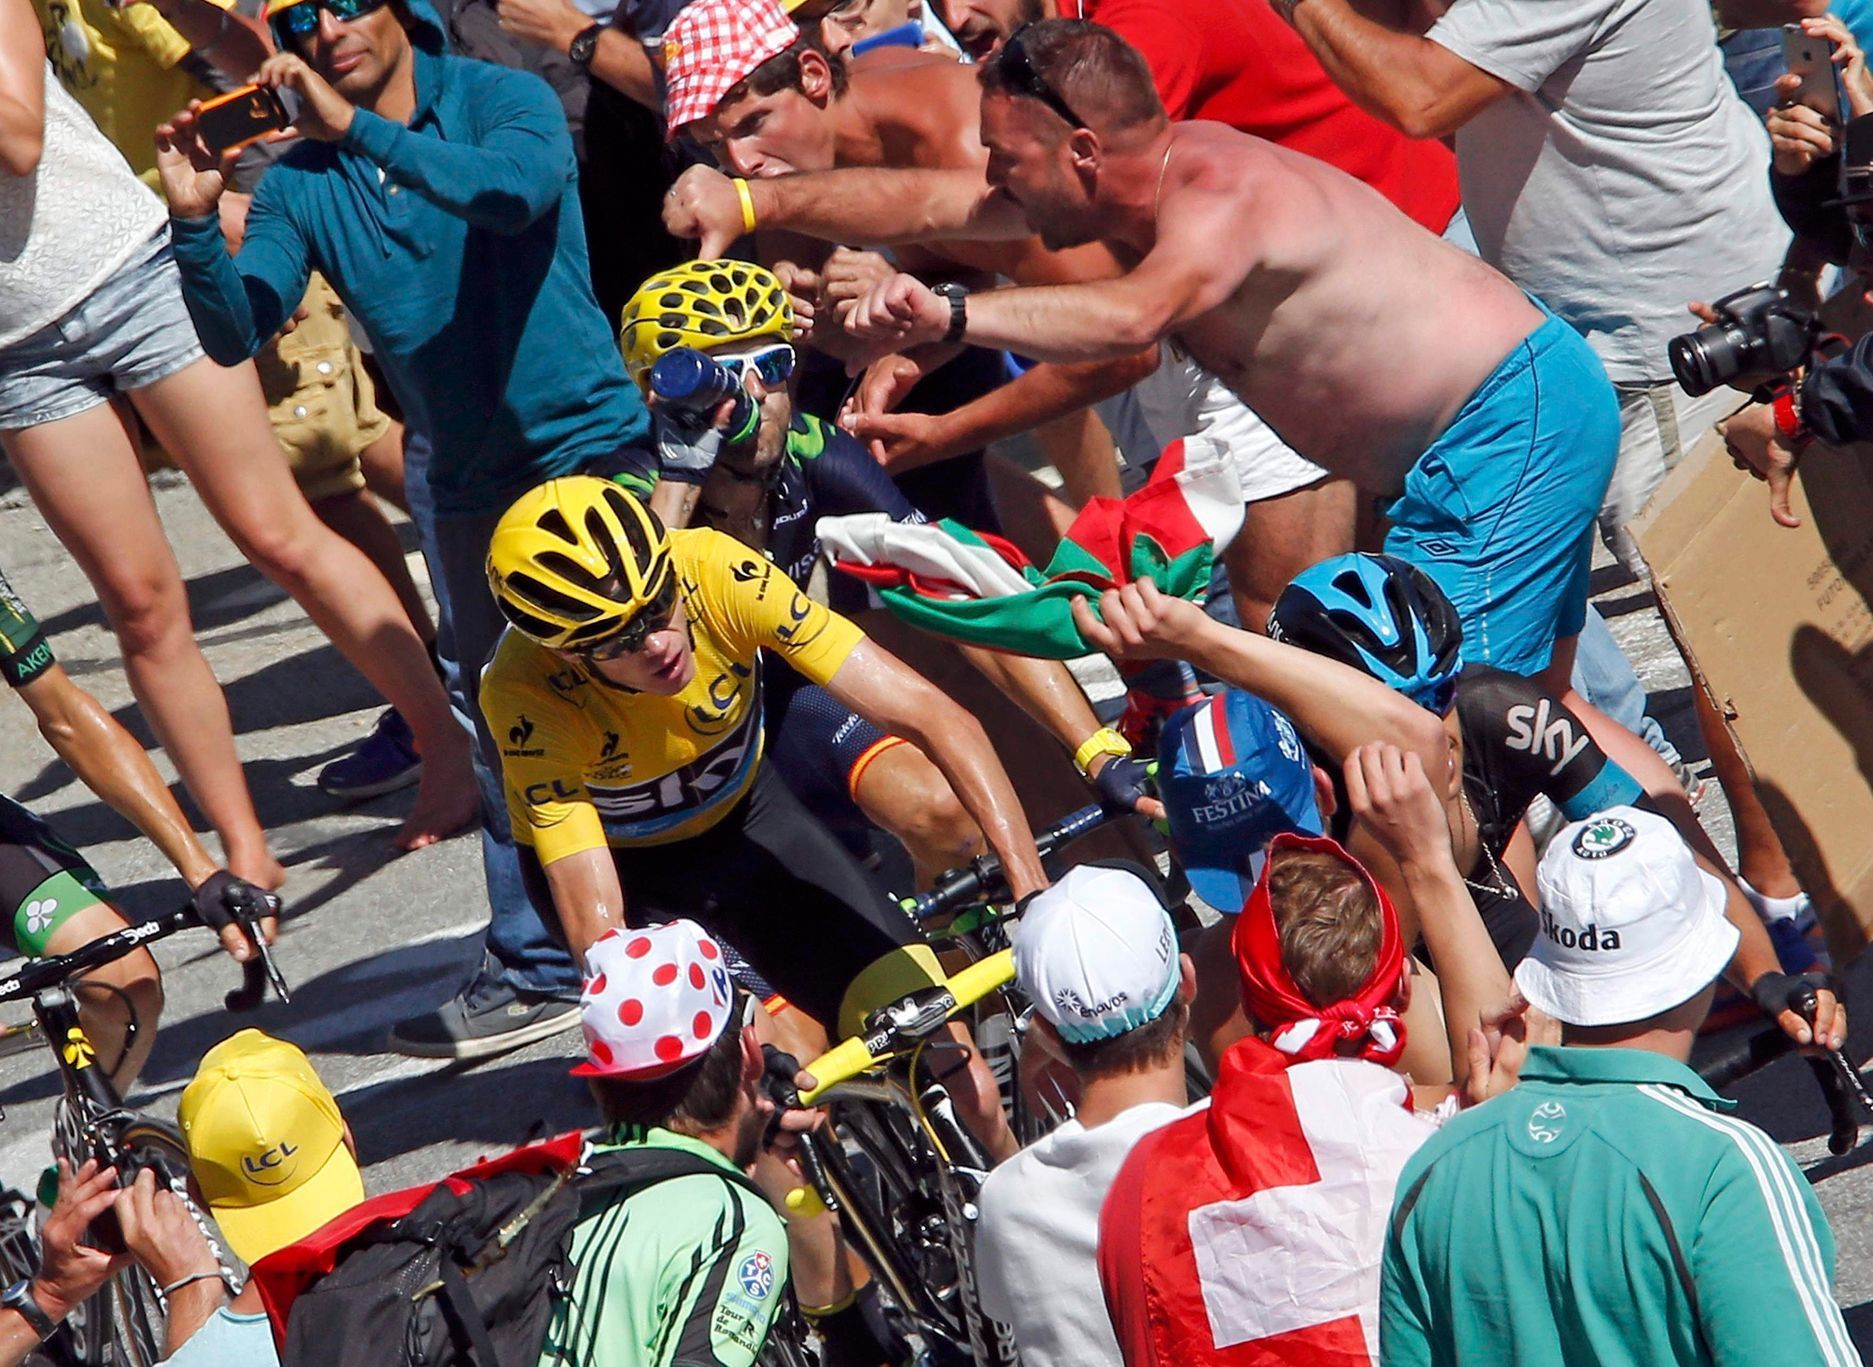 Tour de France 2015, 20. etapa: Chris Froome